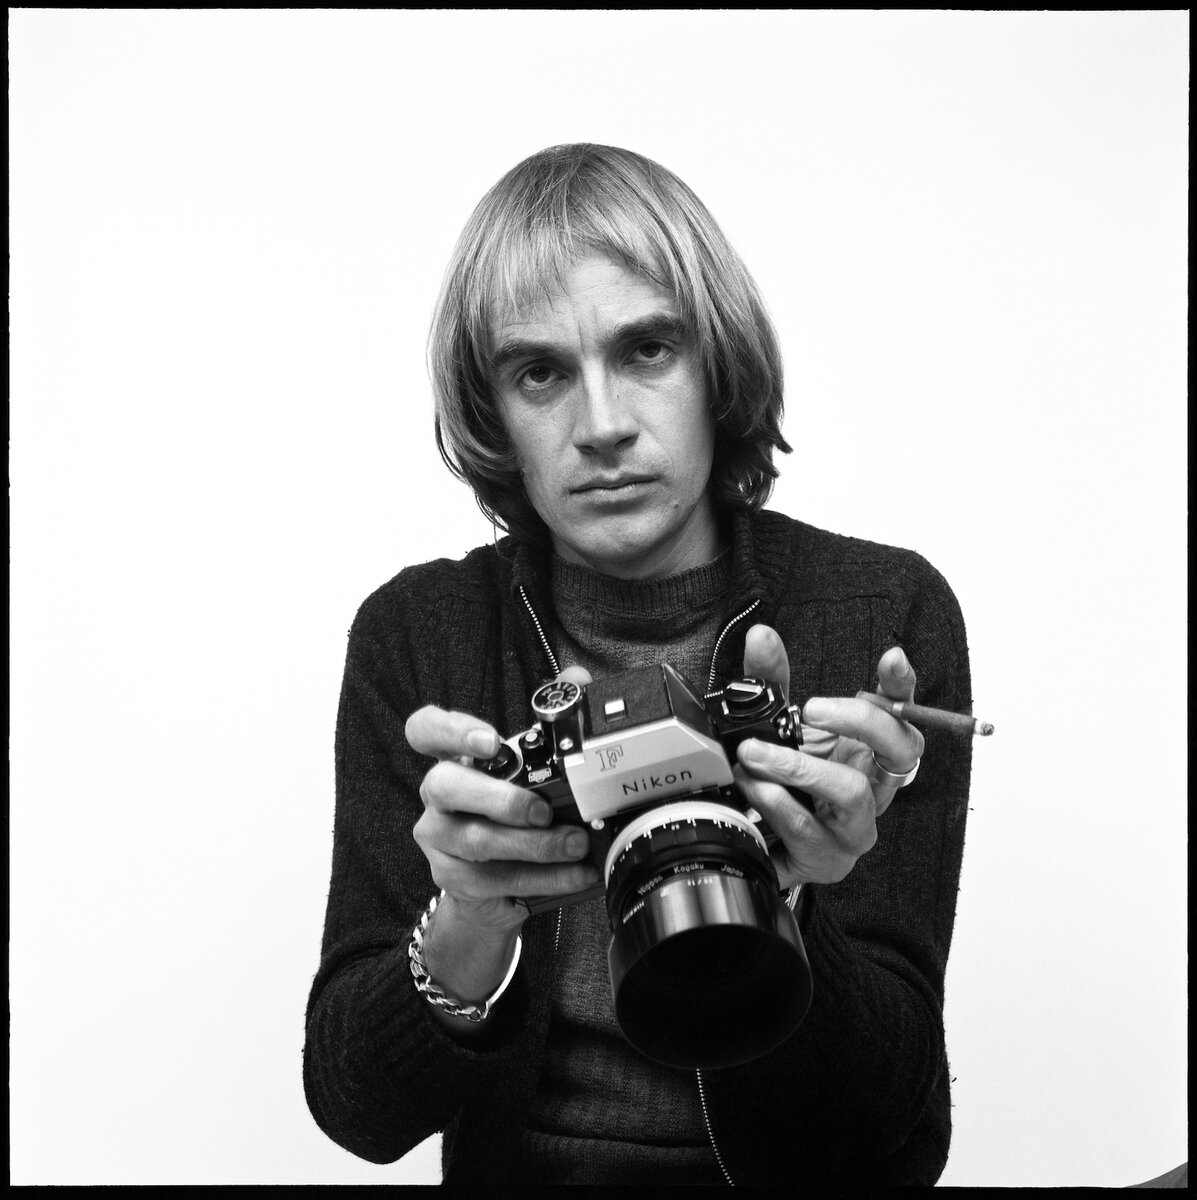 Англичанин Стив Хиетт был одним из легендарных фотографов 1970-х/80-х годов. И прежде всего — фэшн-фотографом.